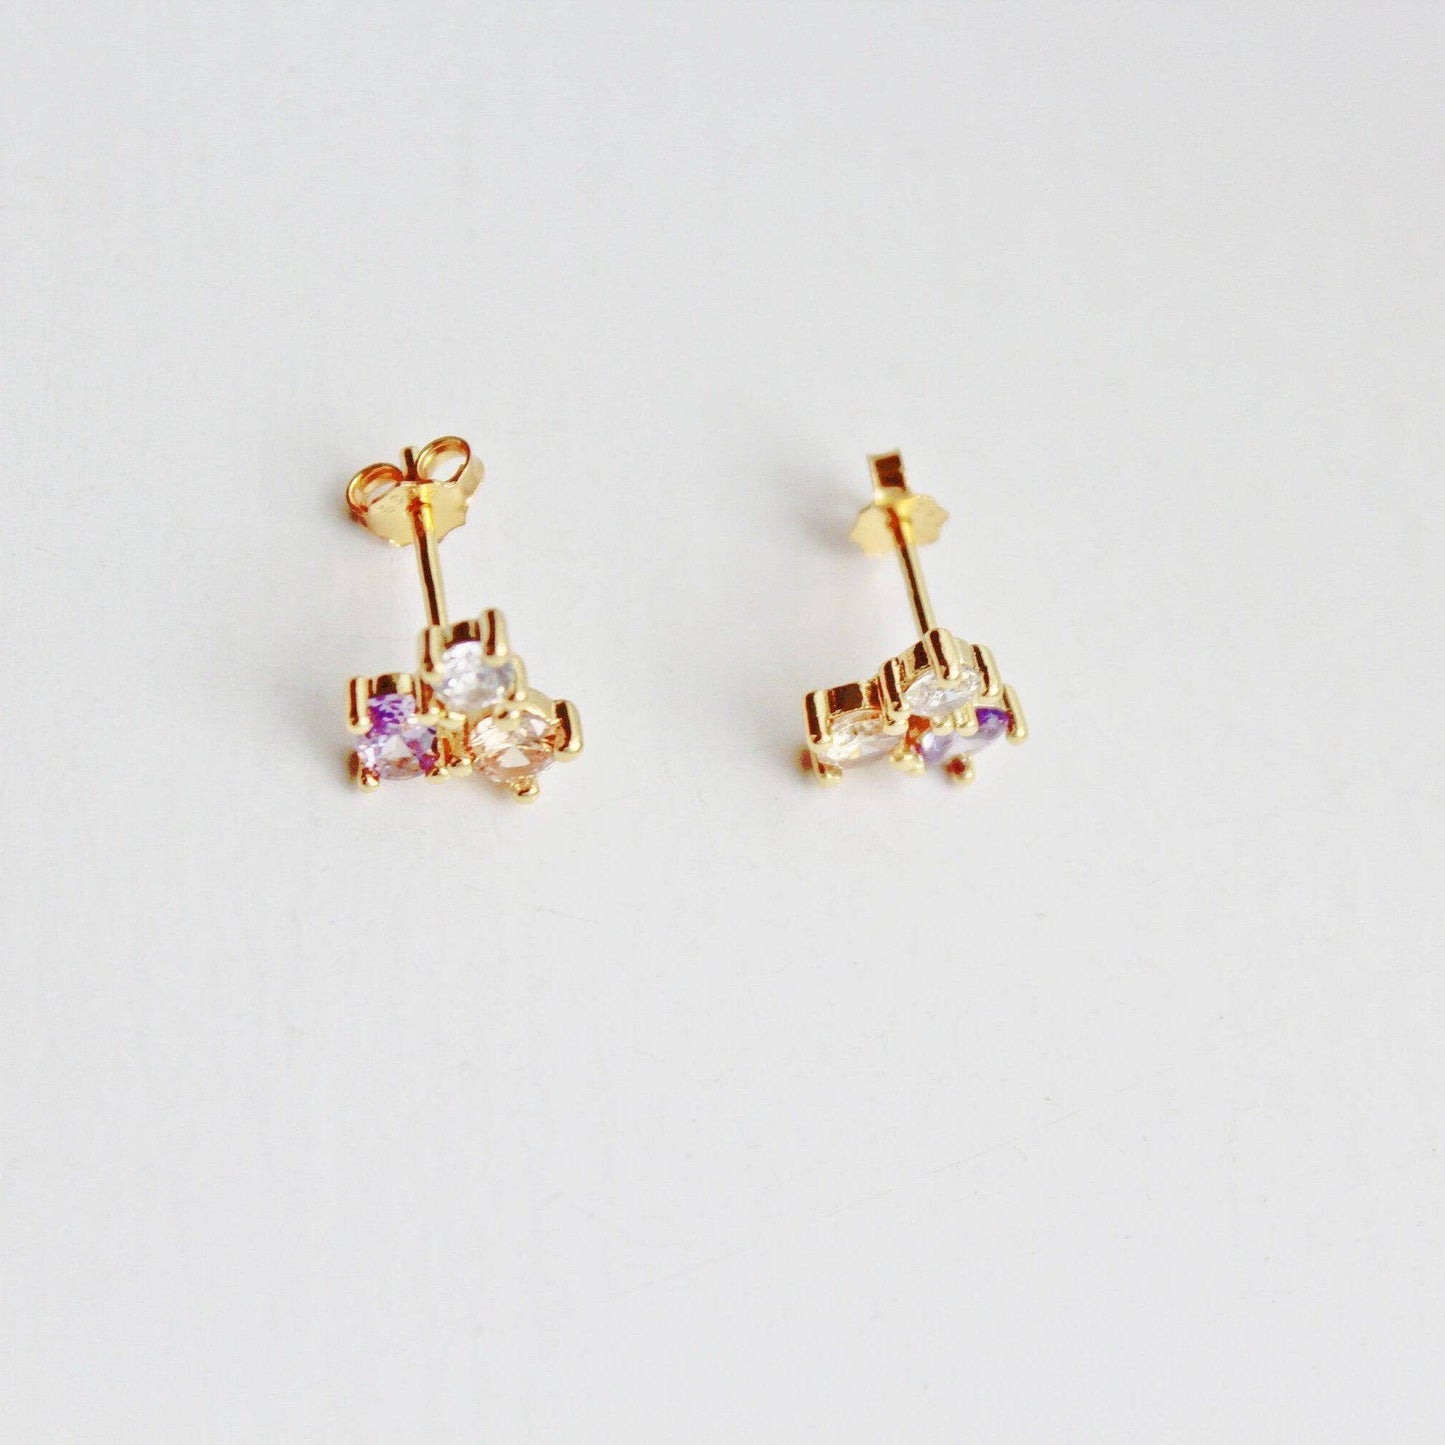 Triple Oval Earrings - Tiny Size Oval Shape Geometry Stud Earrings-Ninaouity